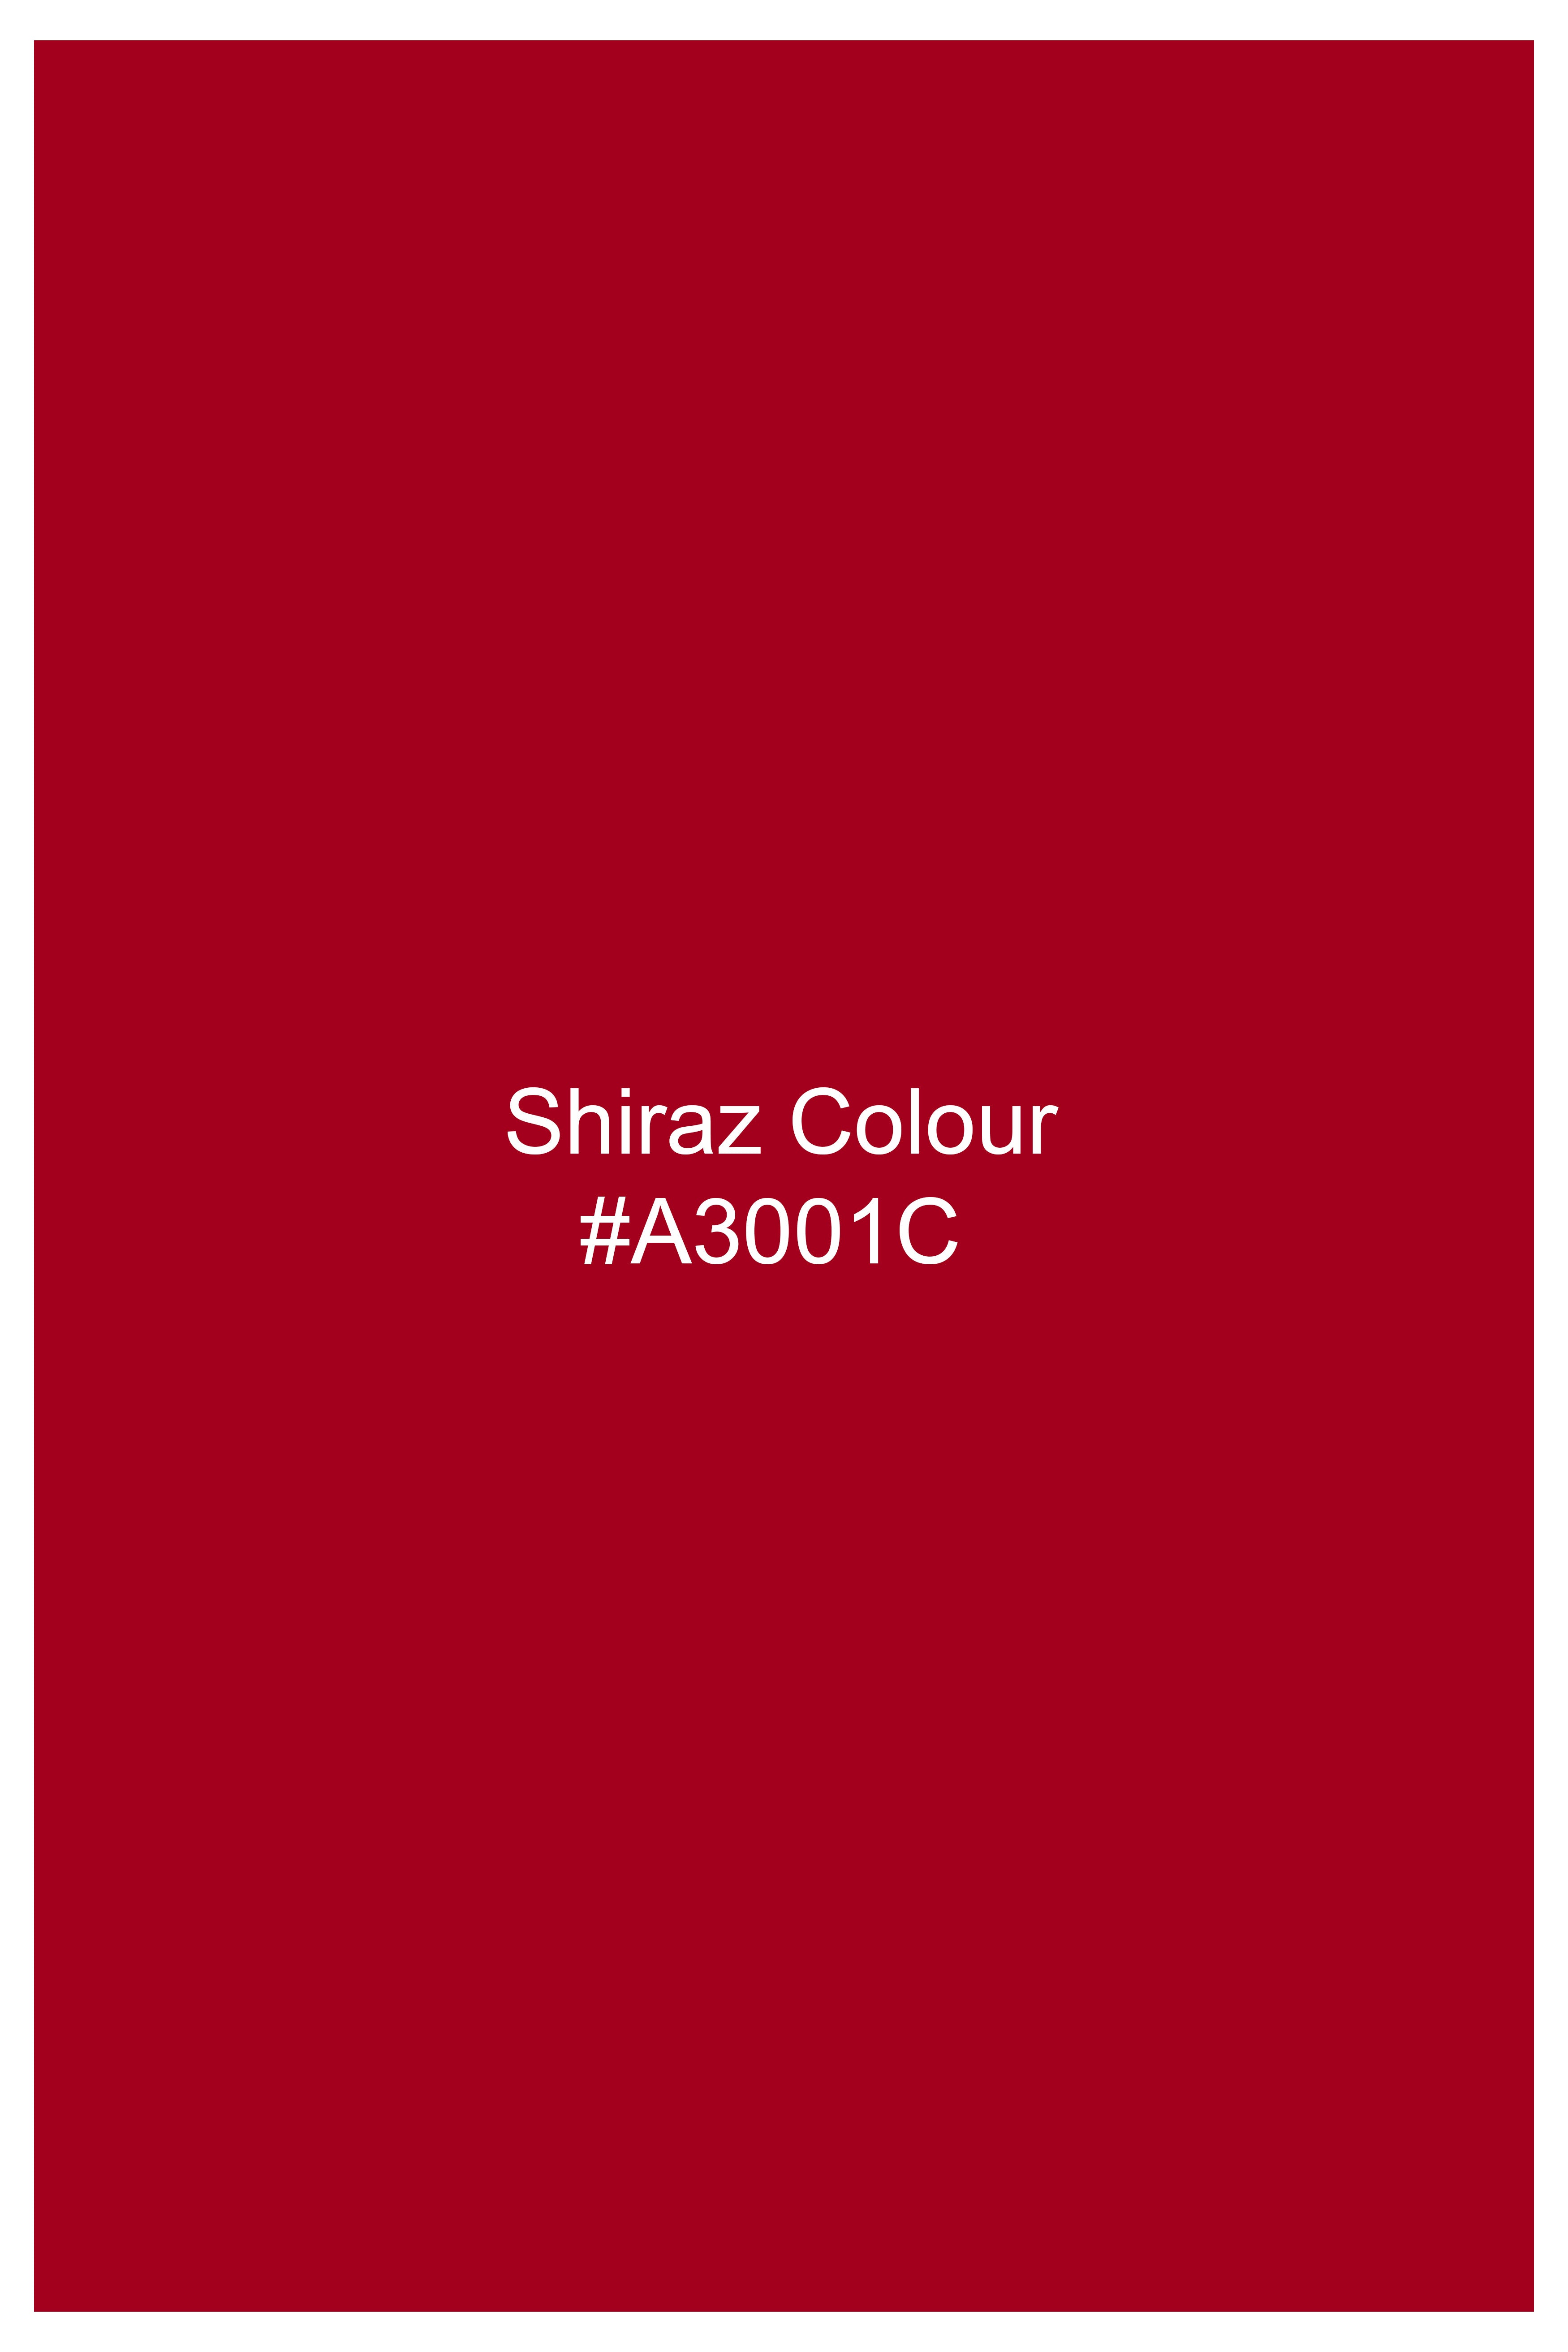 Shiraz Red Hand Painted Dobby Premium Giza Cotton Designer Shirt